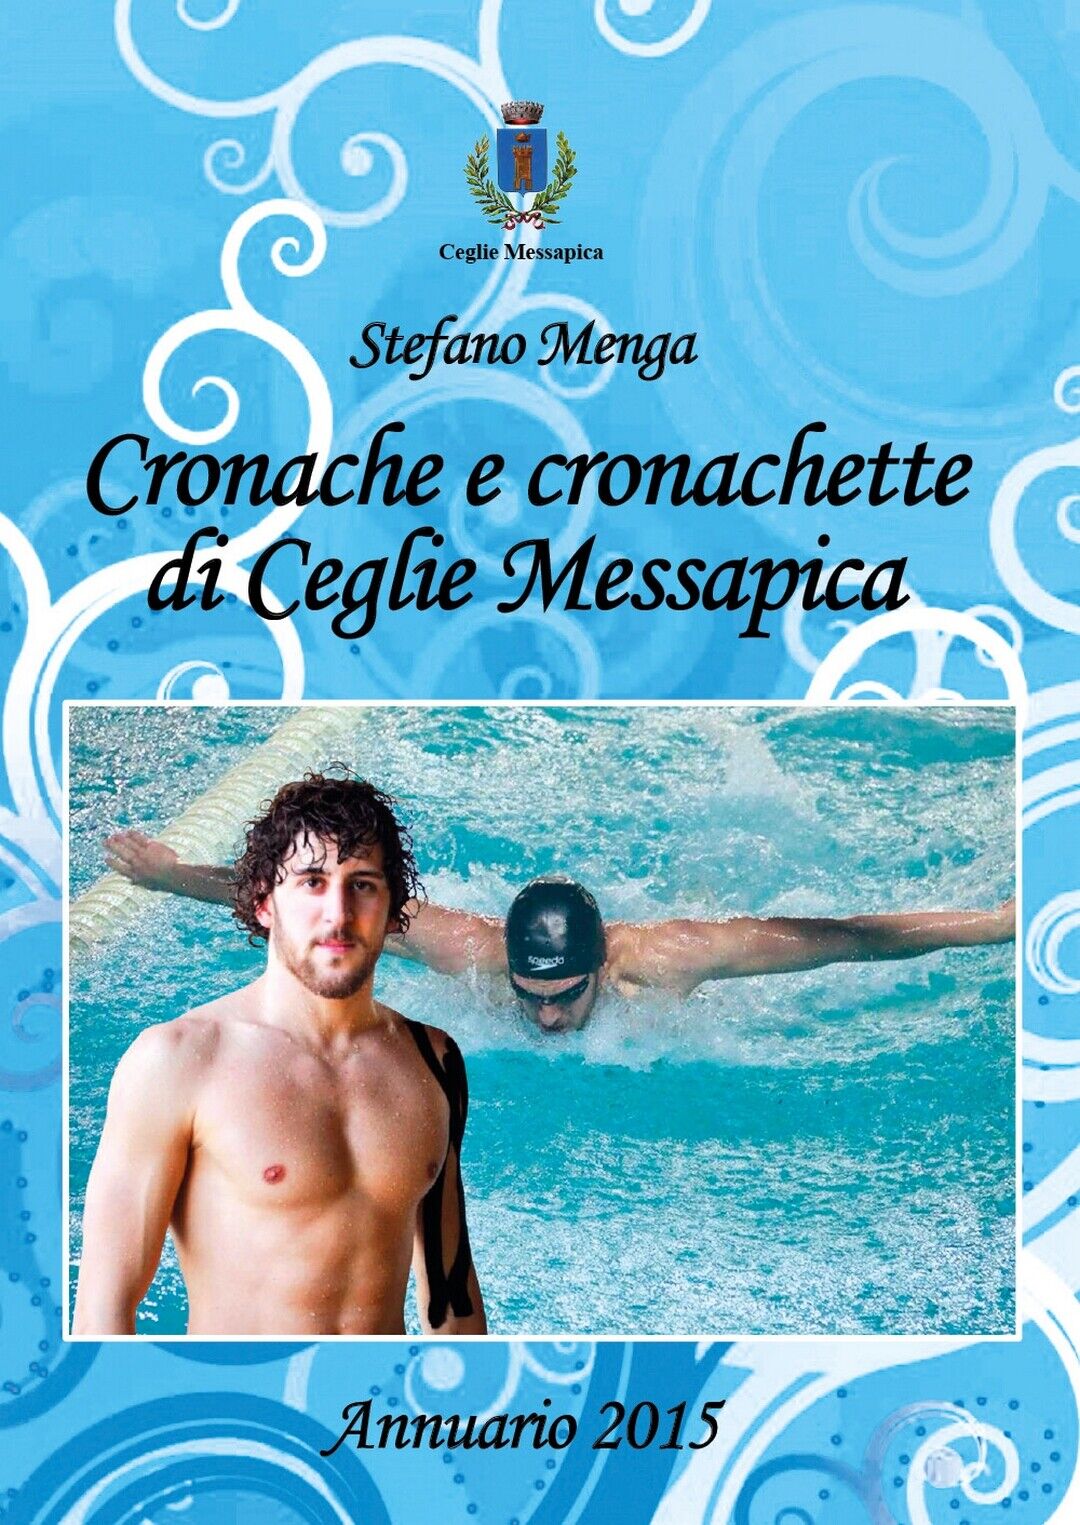 Cronache e cronachette di Ceglie Messapica - Annuario 2015  di Stefano Menga